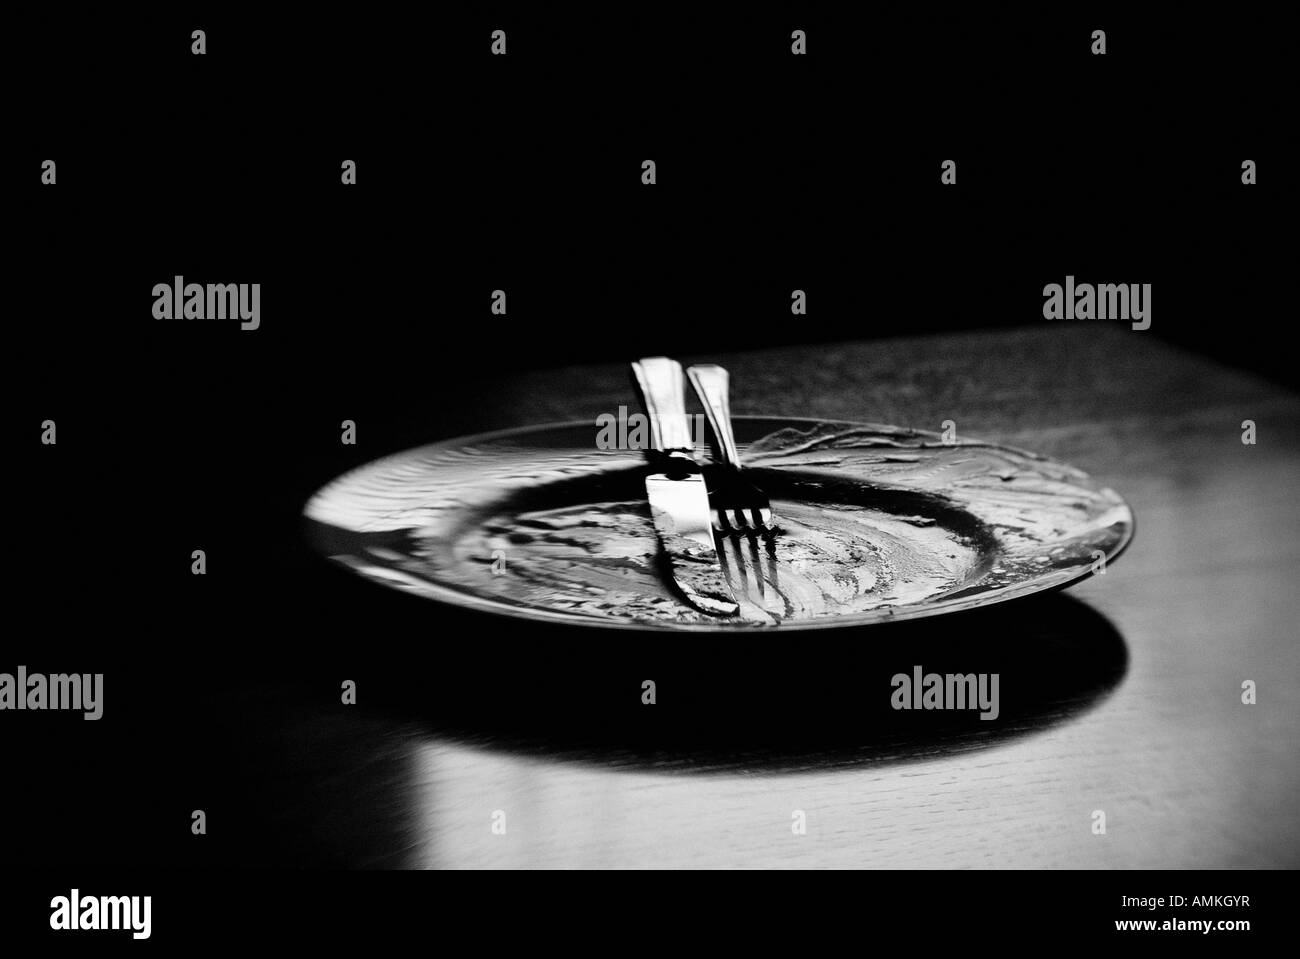 Schwarz / weiß Bild eines leeren Teller und Besteck Stockfoto